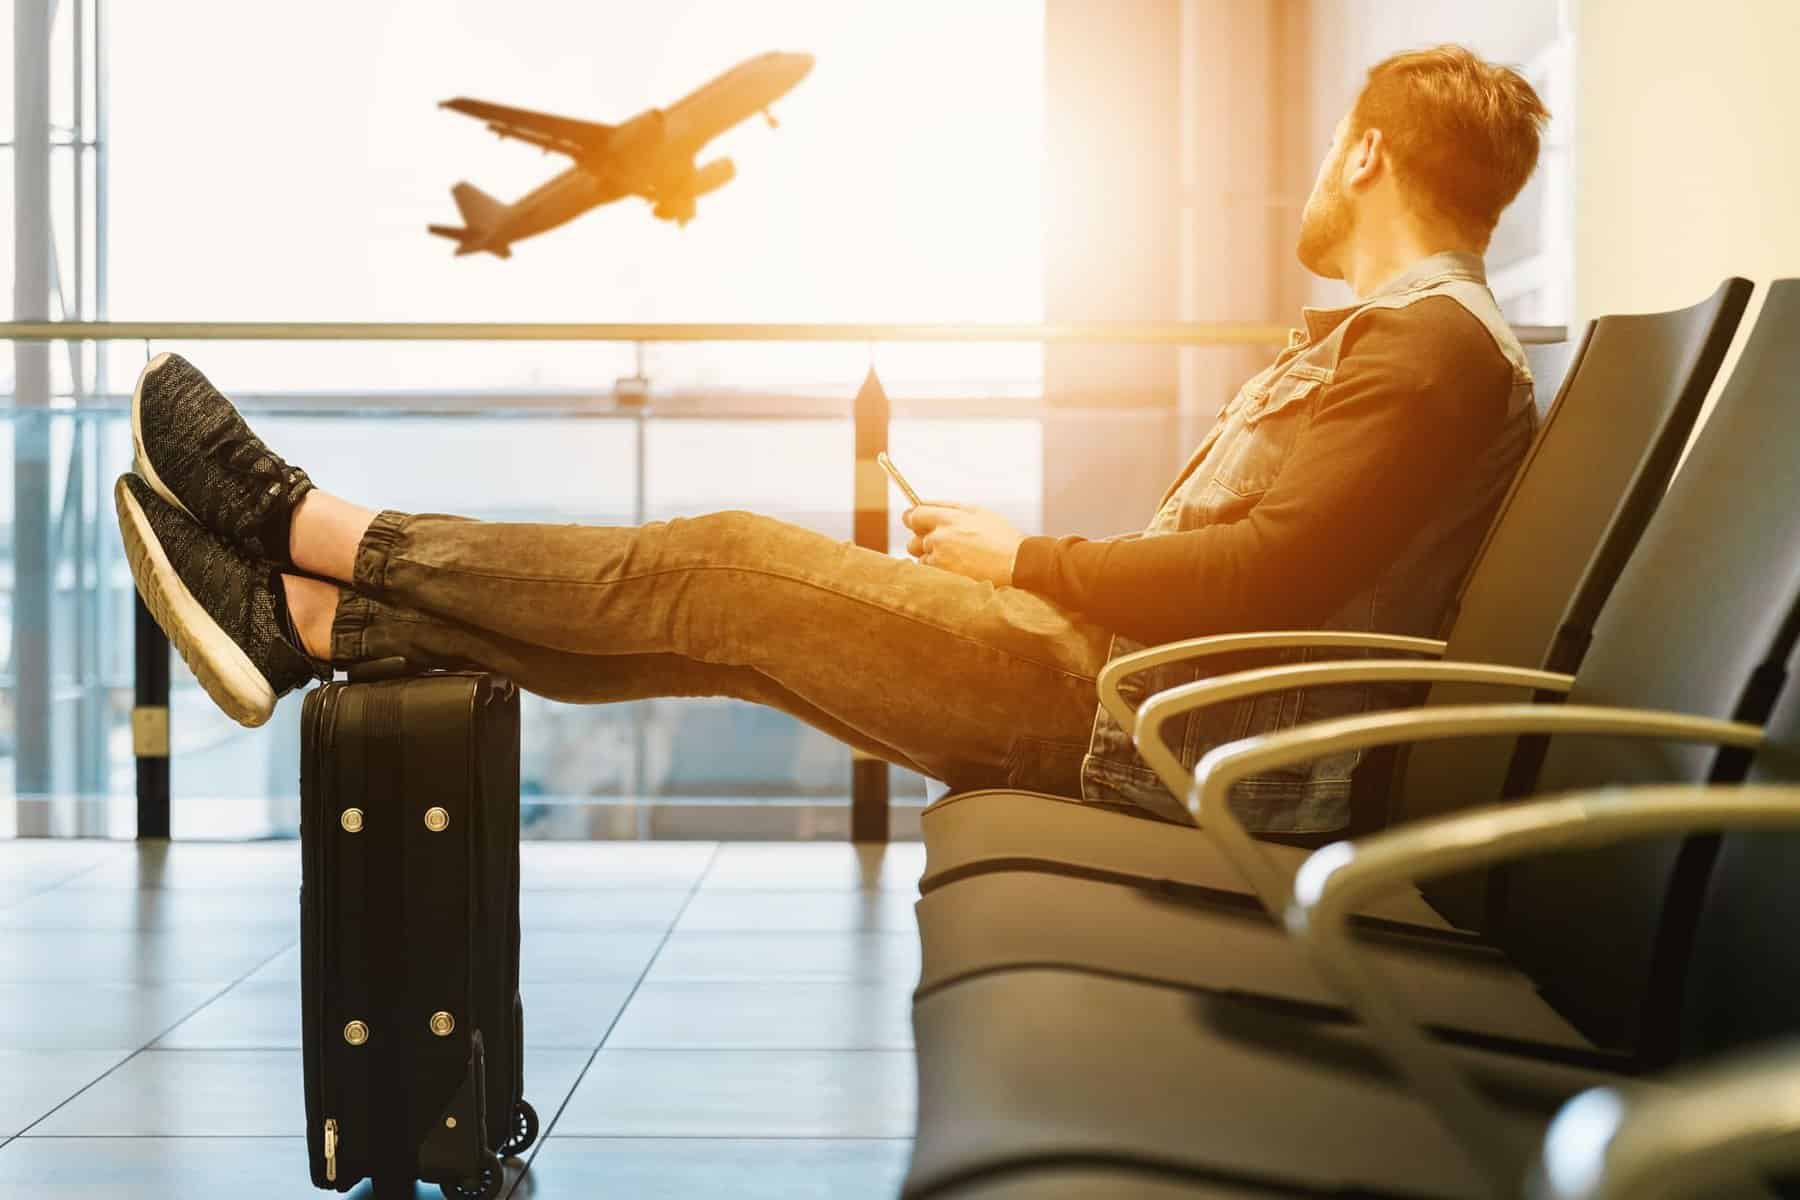 Passager non-rev attendant dans un aéroport